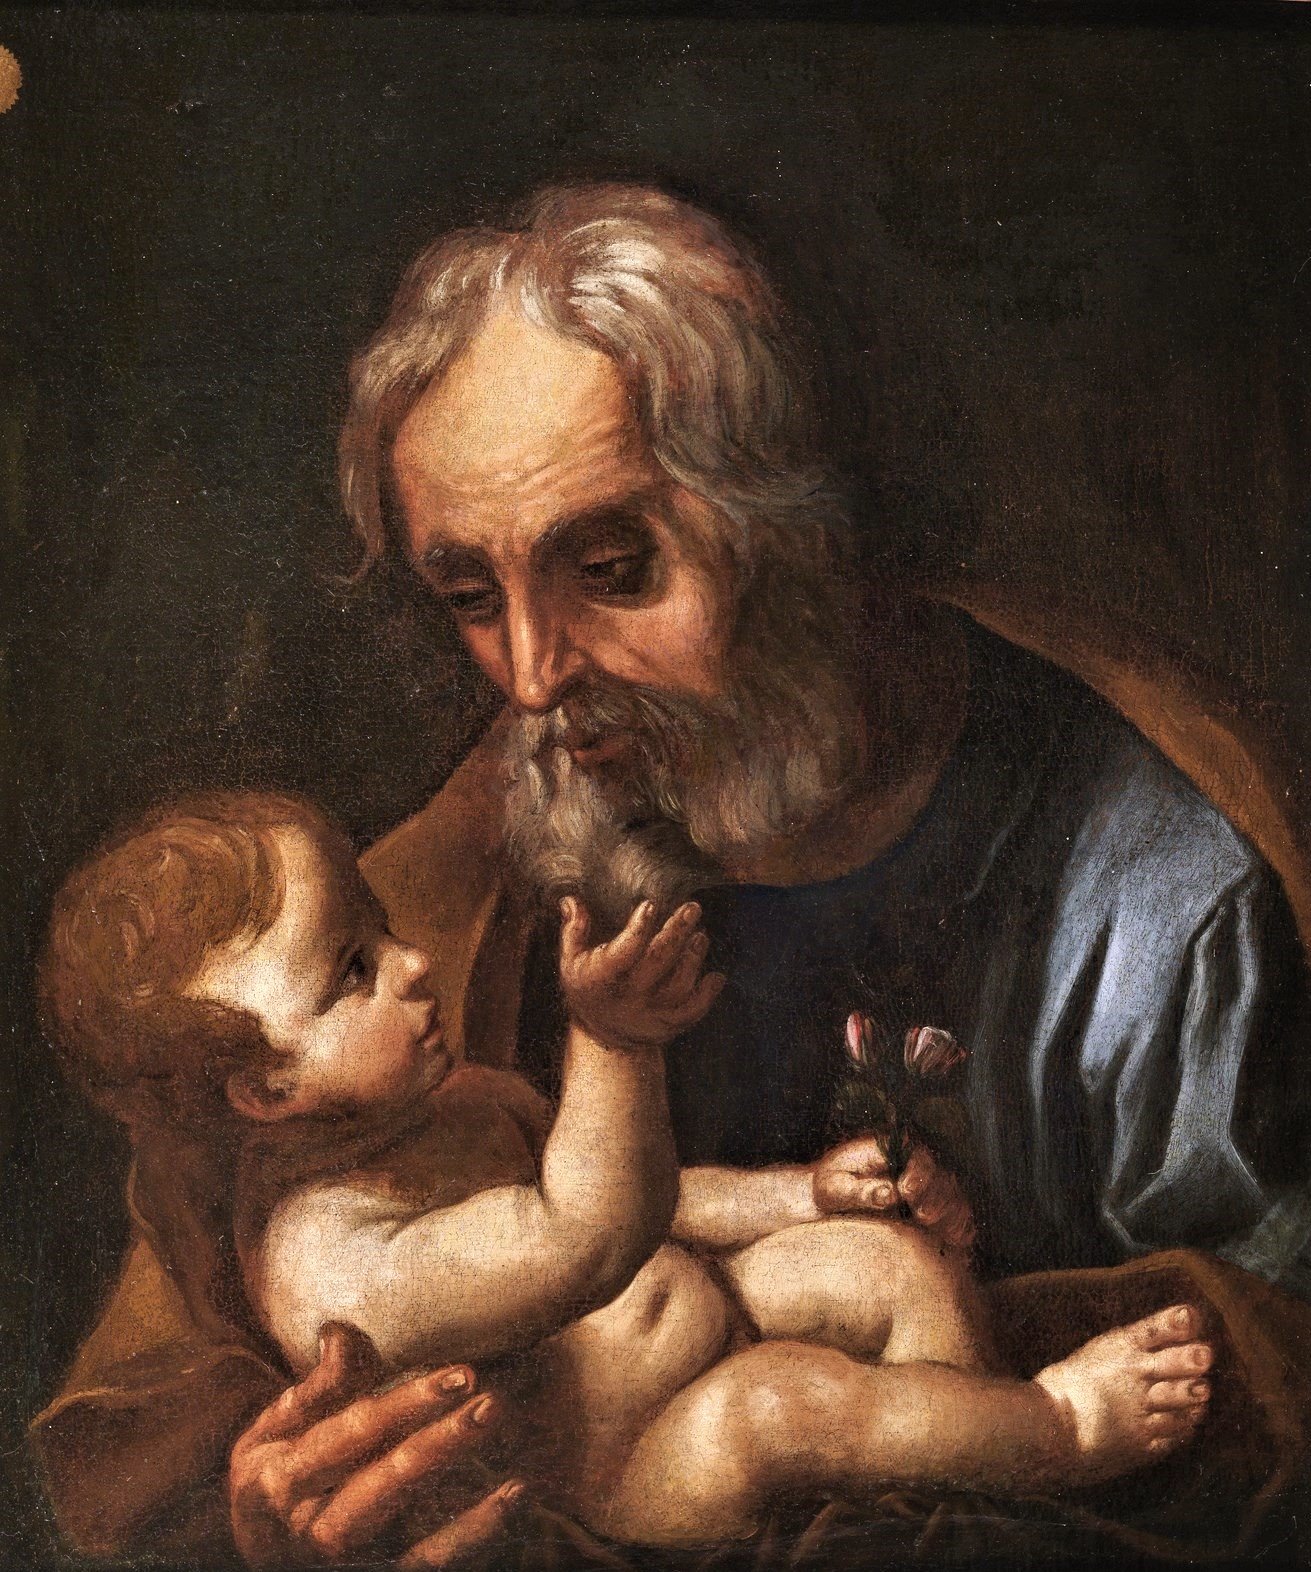 San Giuseppe con il Bambino